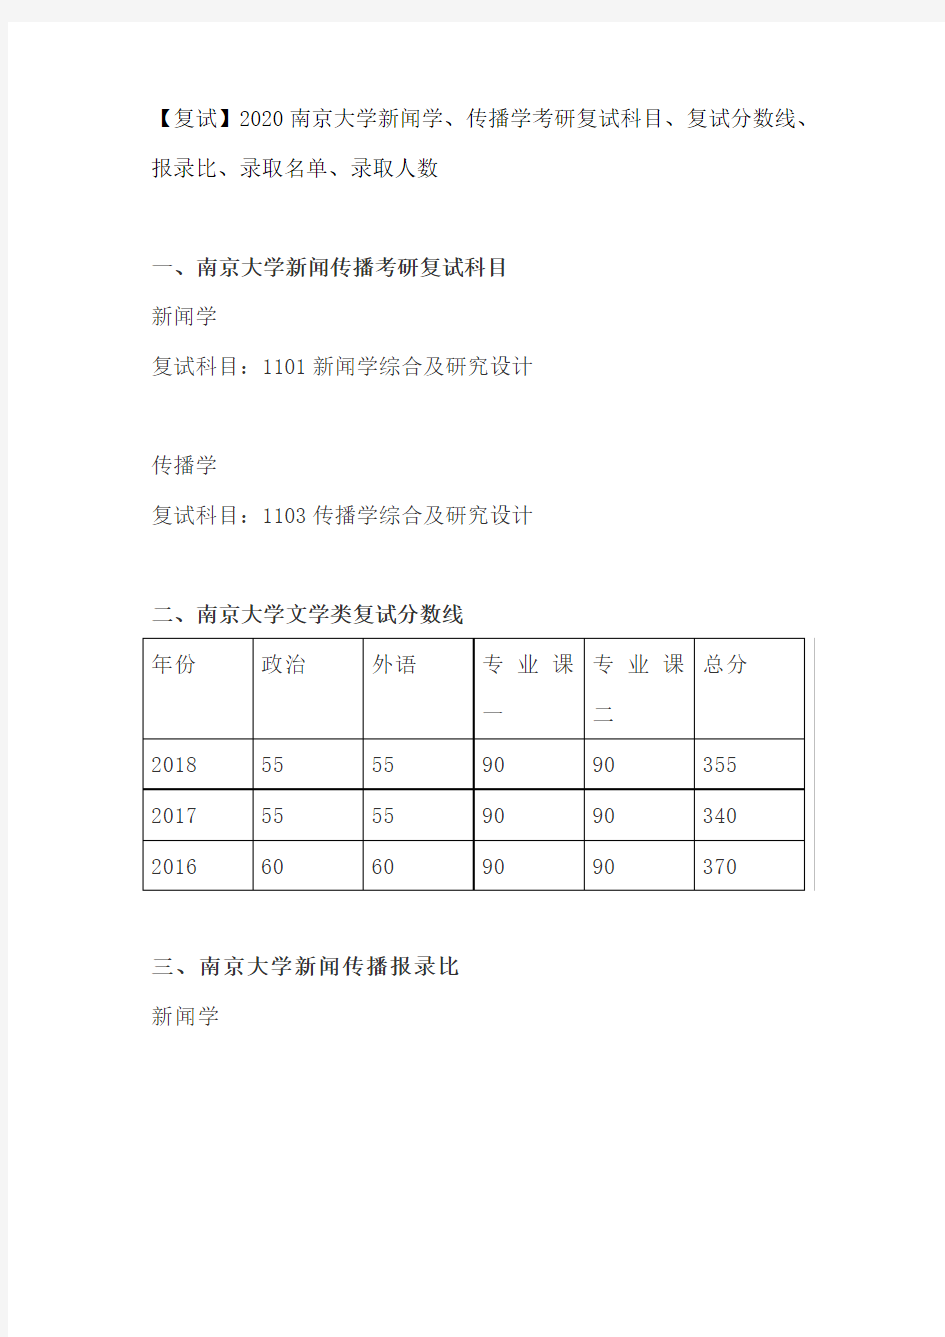 【复试】2020南京大学新闻学、传播学考研复试科目、复试分数线、报录比、录取名单、录取人数